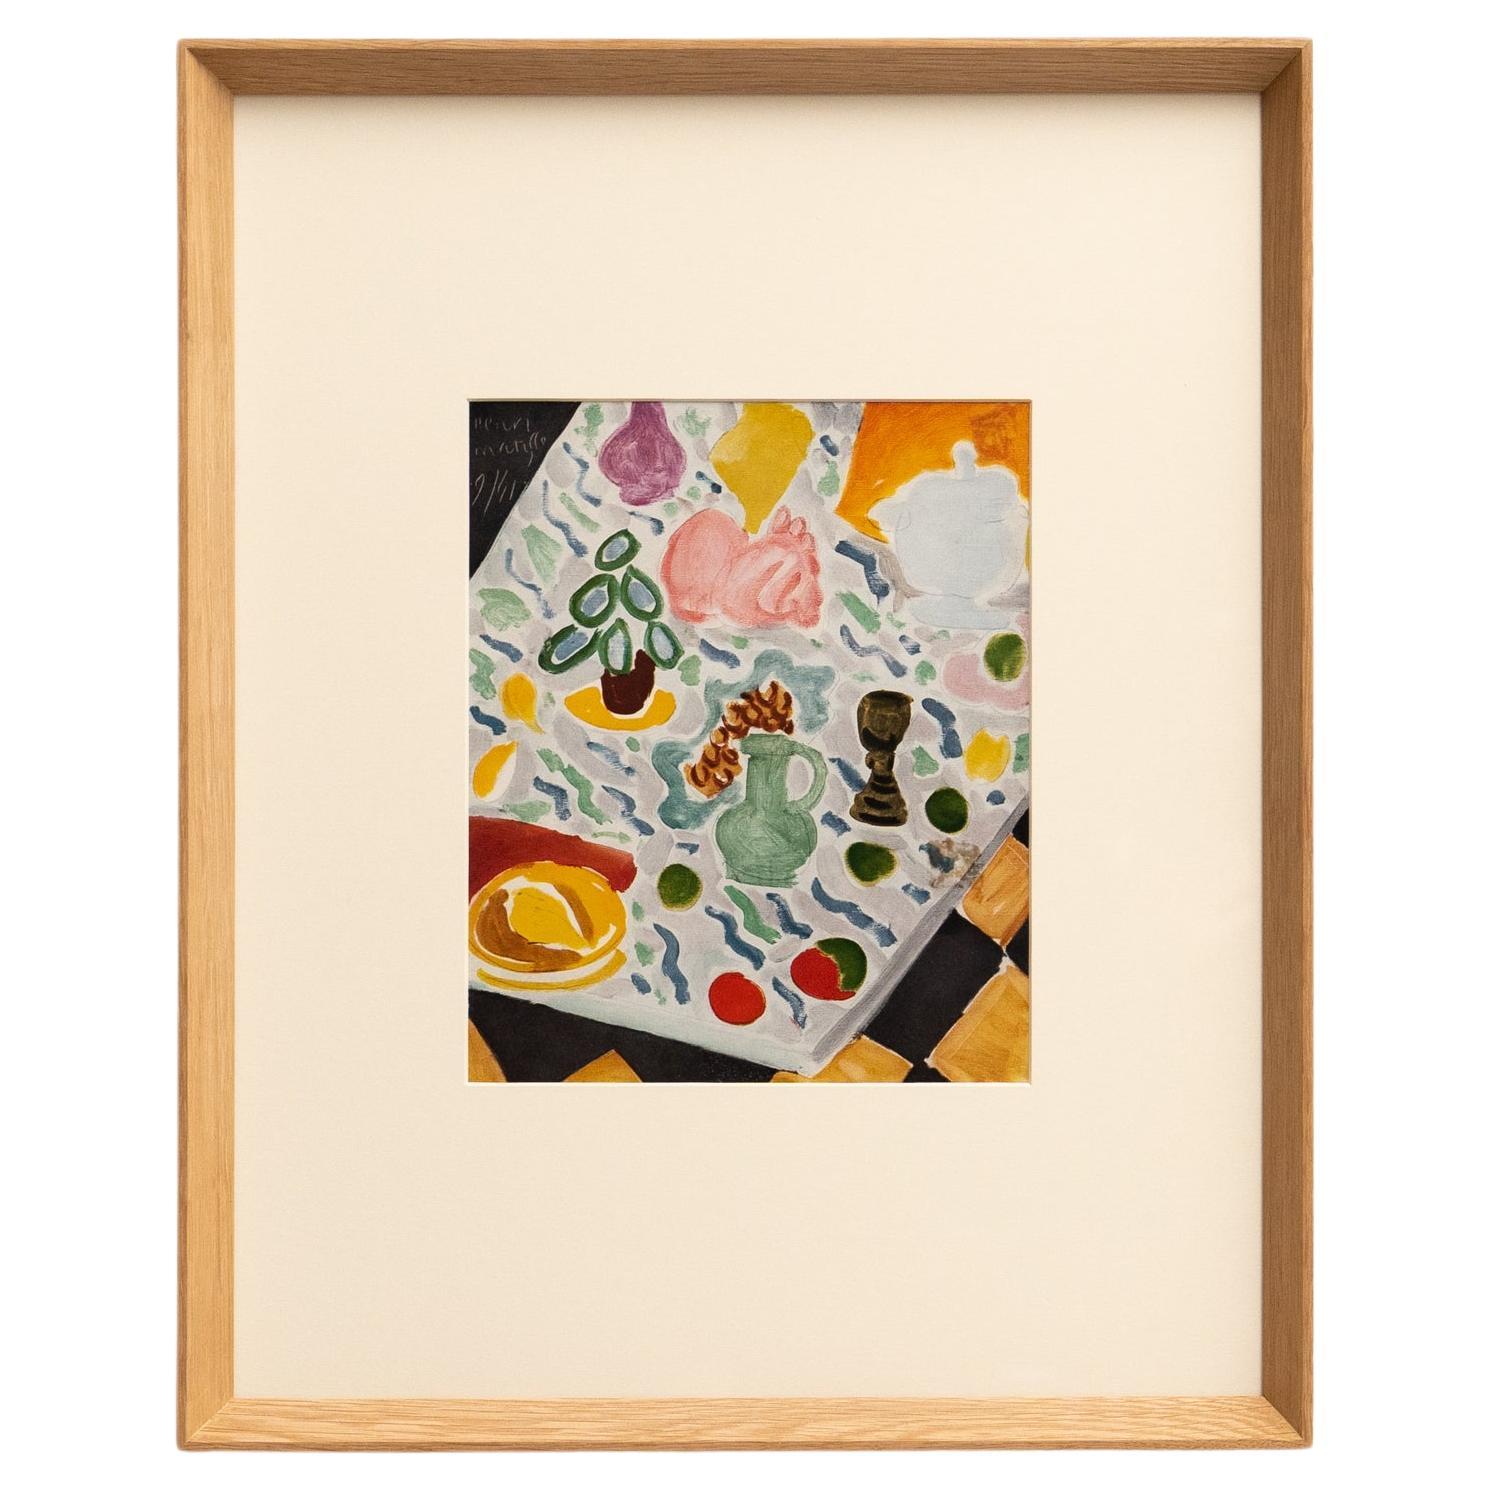 Rara litografía en color: Un vistazo a la maestría artística de Matisse en venta